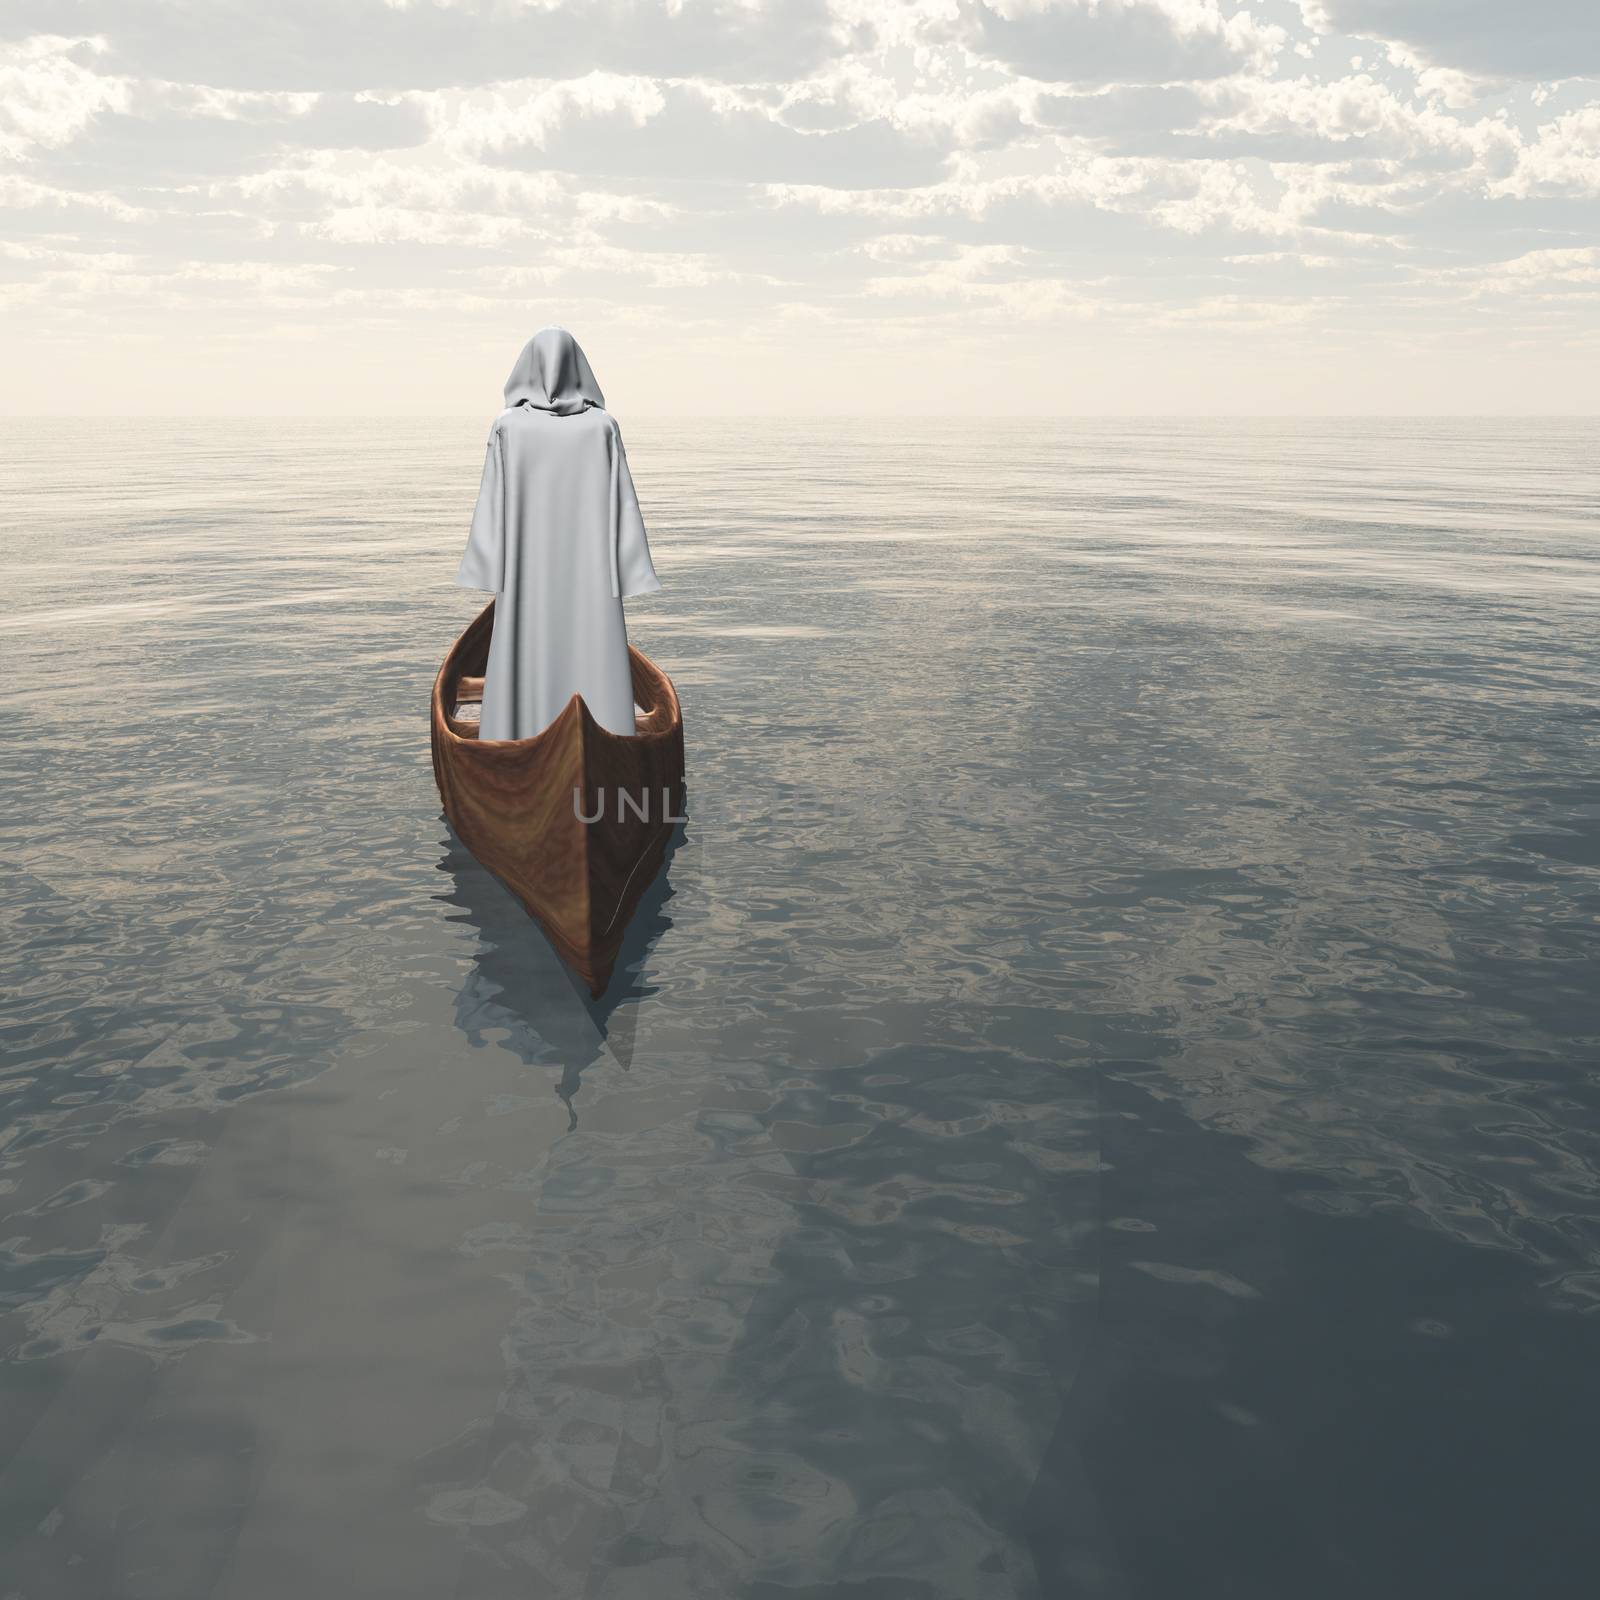 Surreal digital art. Figure in white cloak floats in wooden boat.